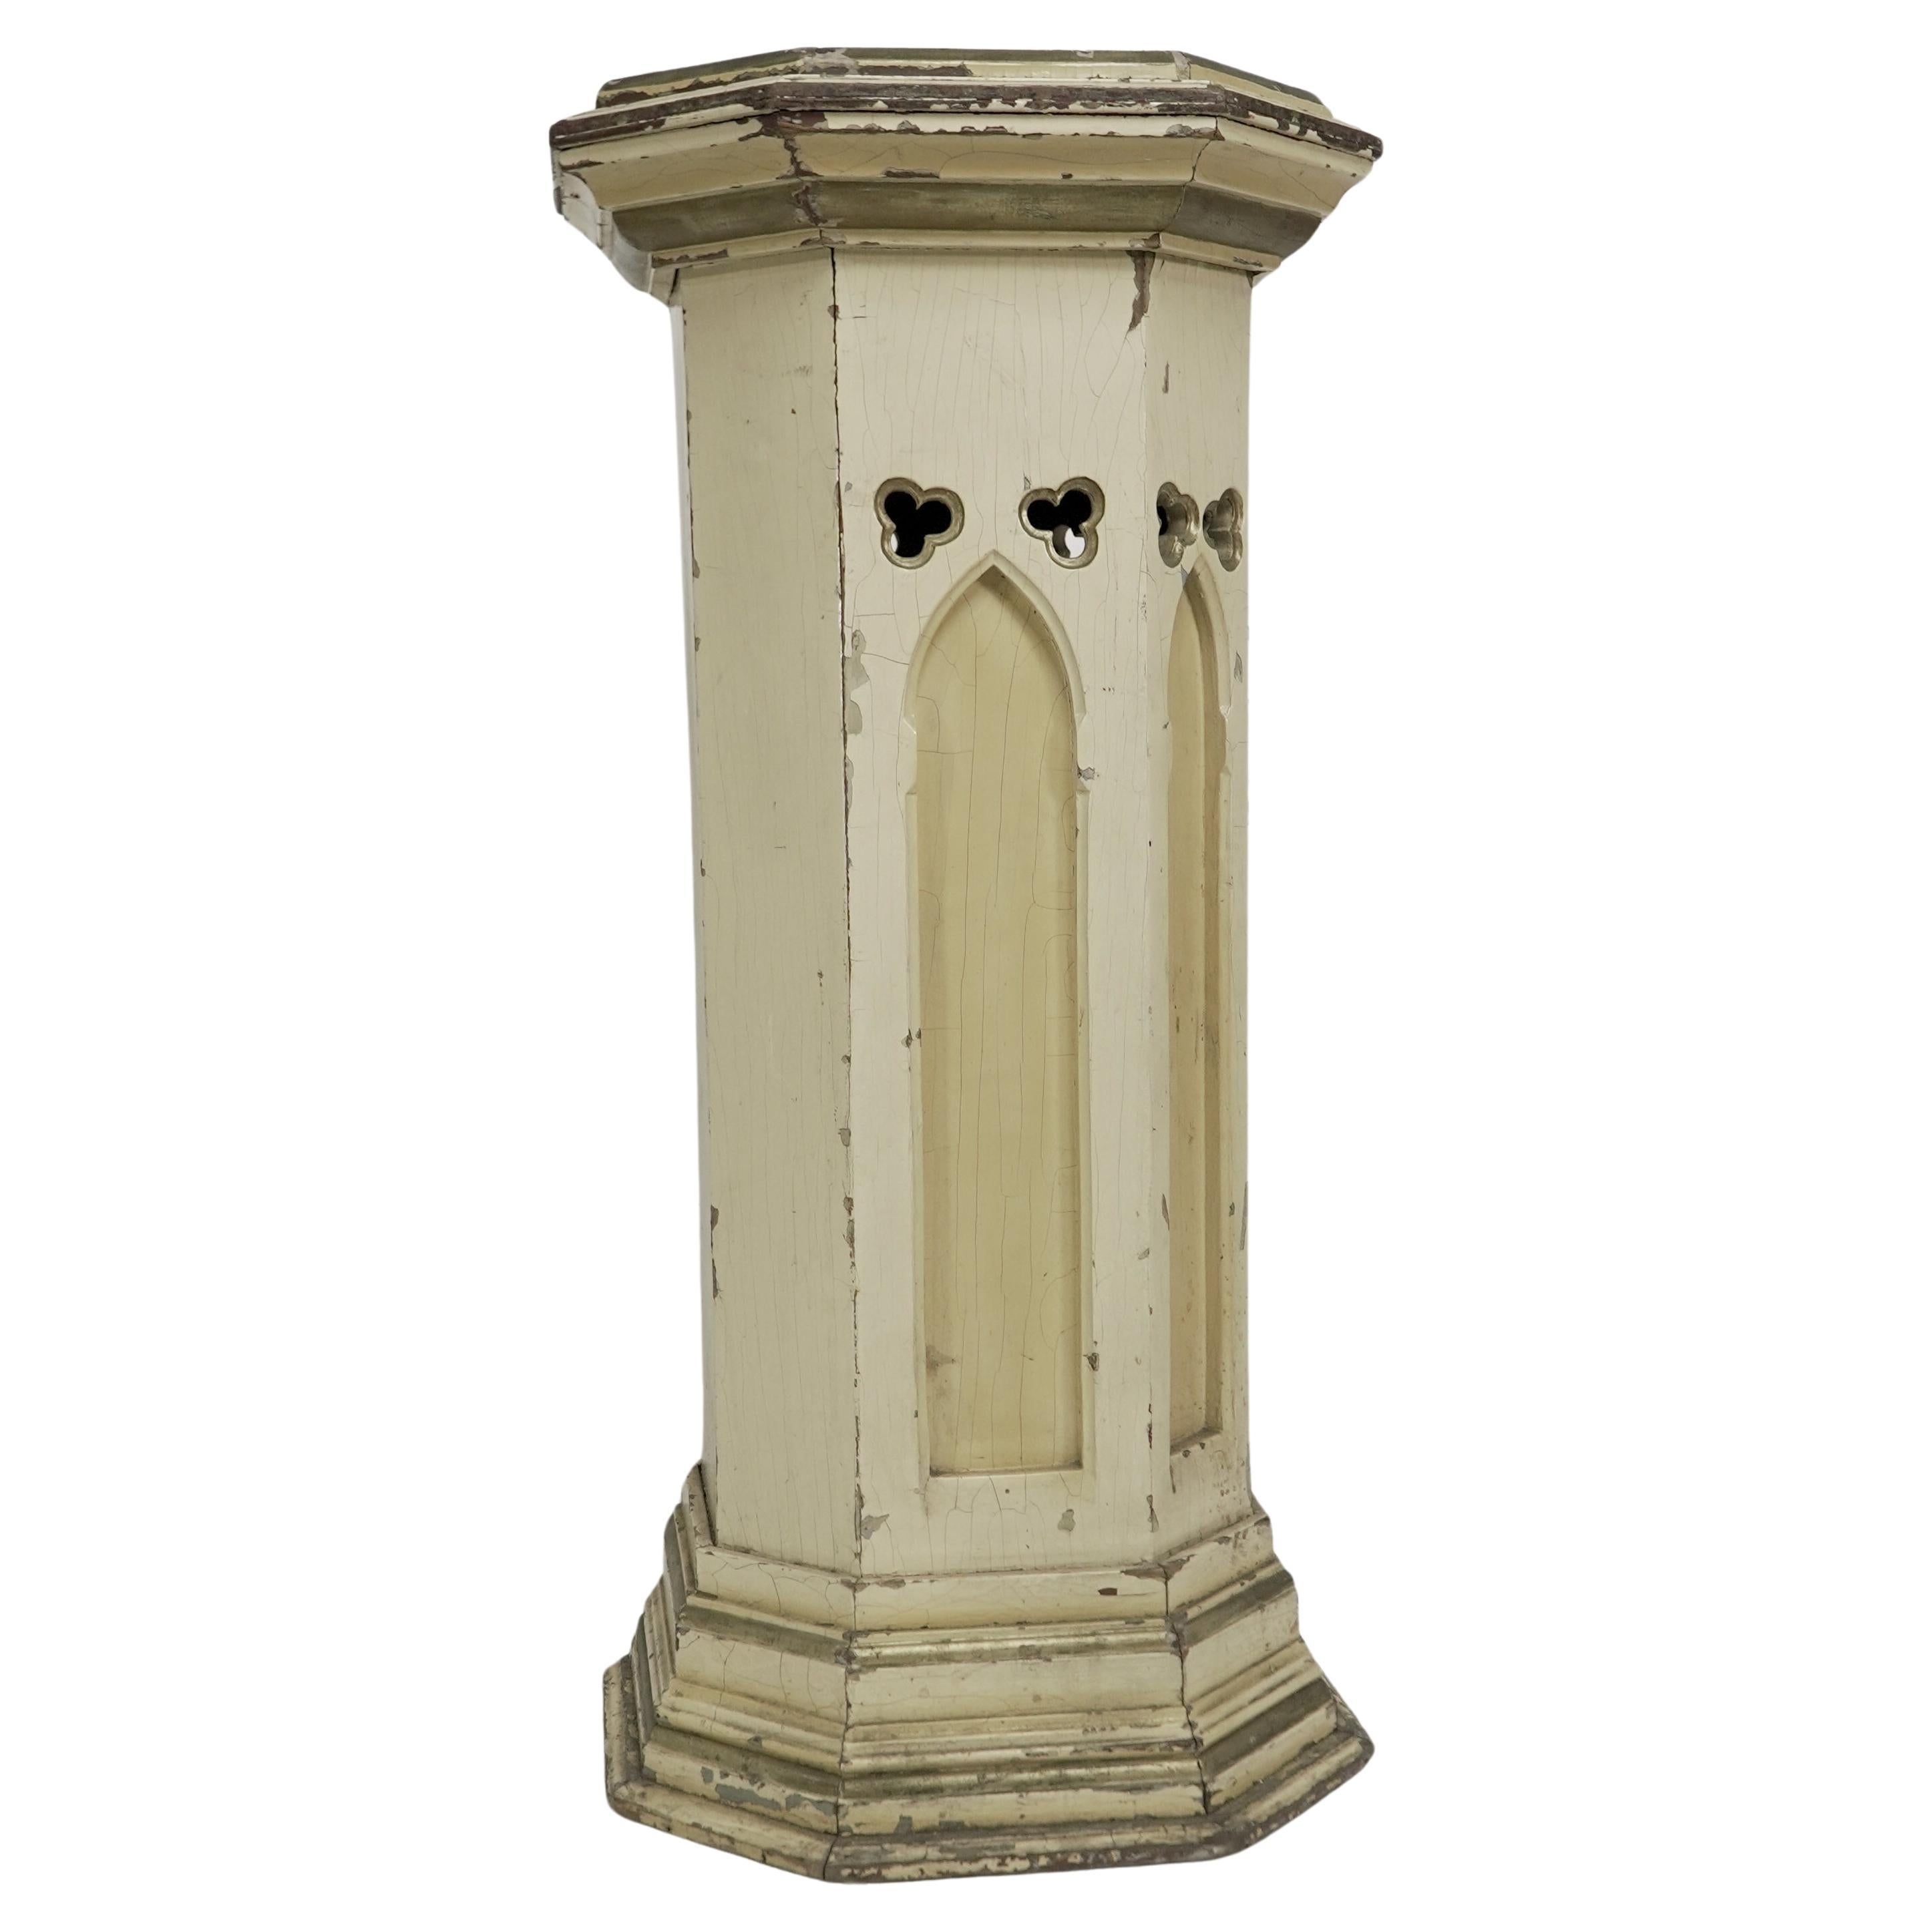 The Pedestal ist ein polychrom bemalter achteckiger Sockel mit einem abgestuften, geformten Rand an der Oberseite.